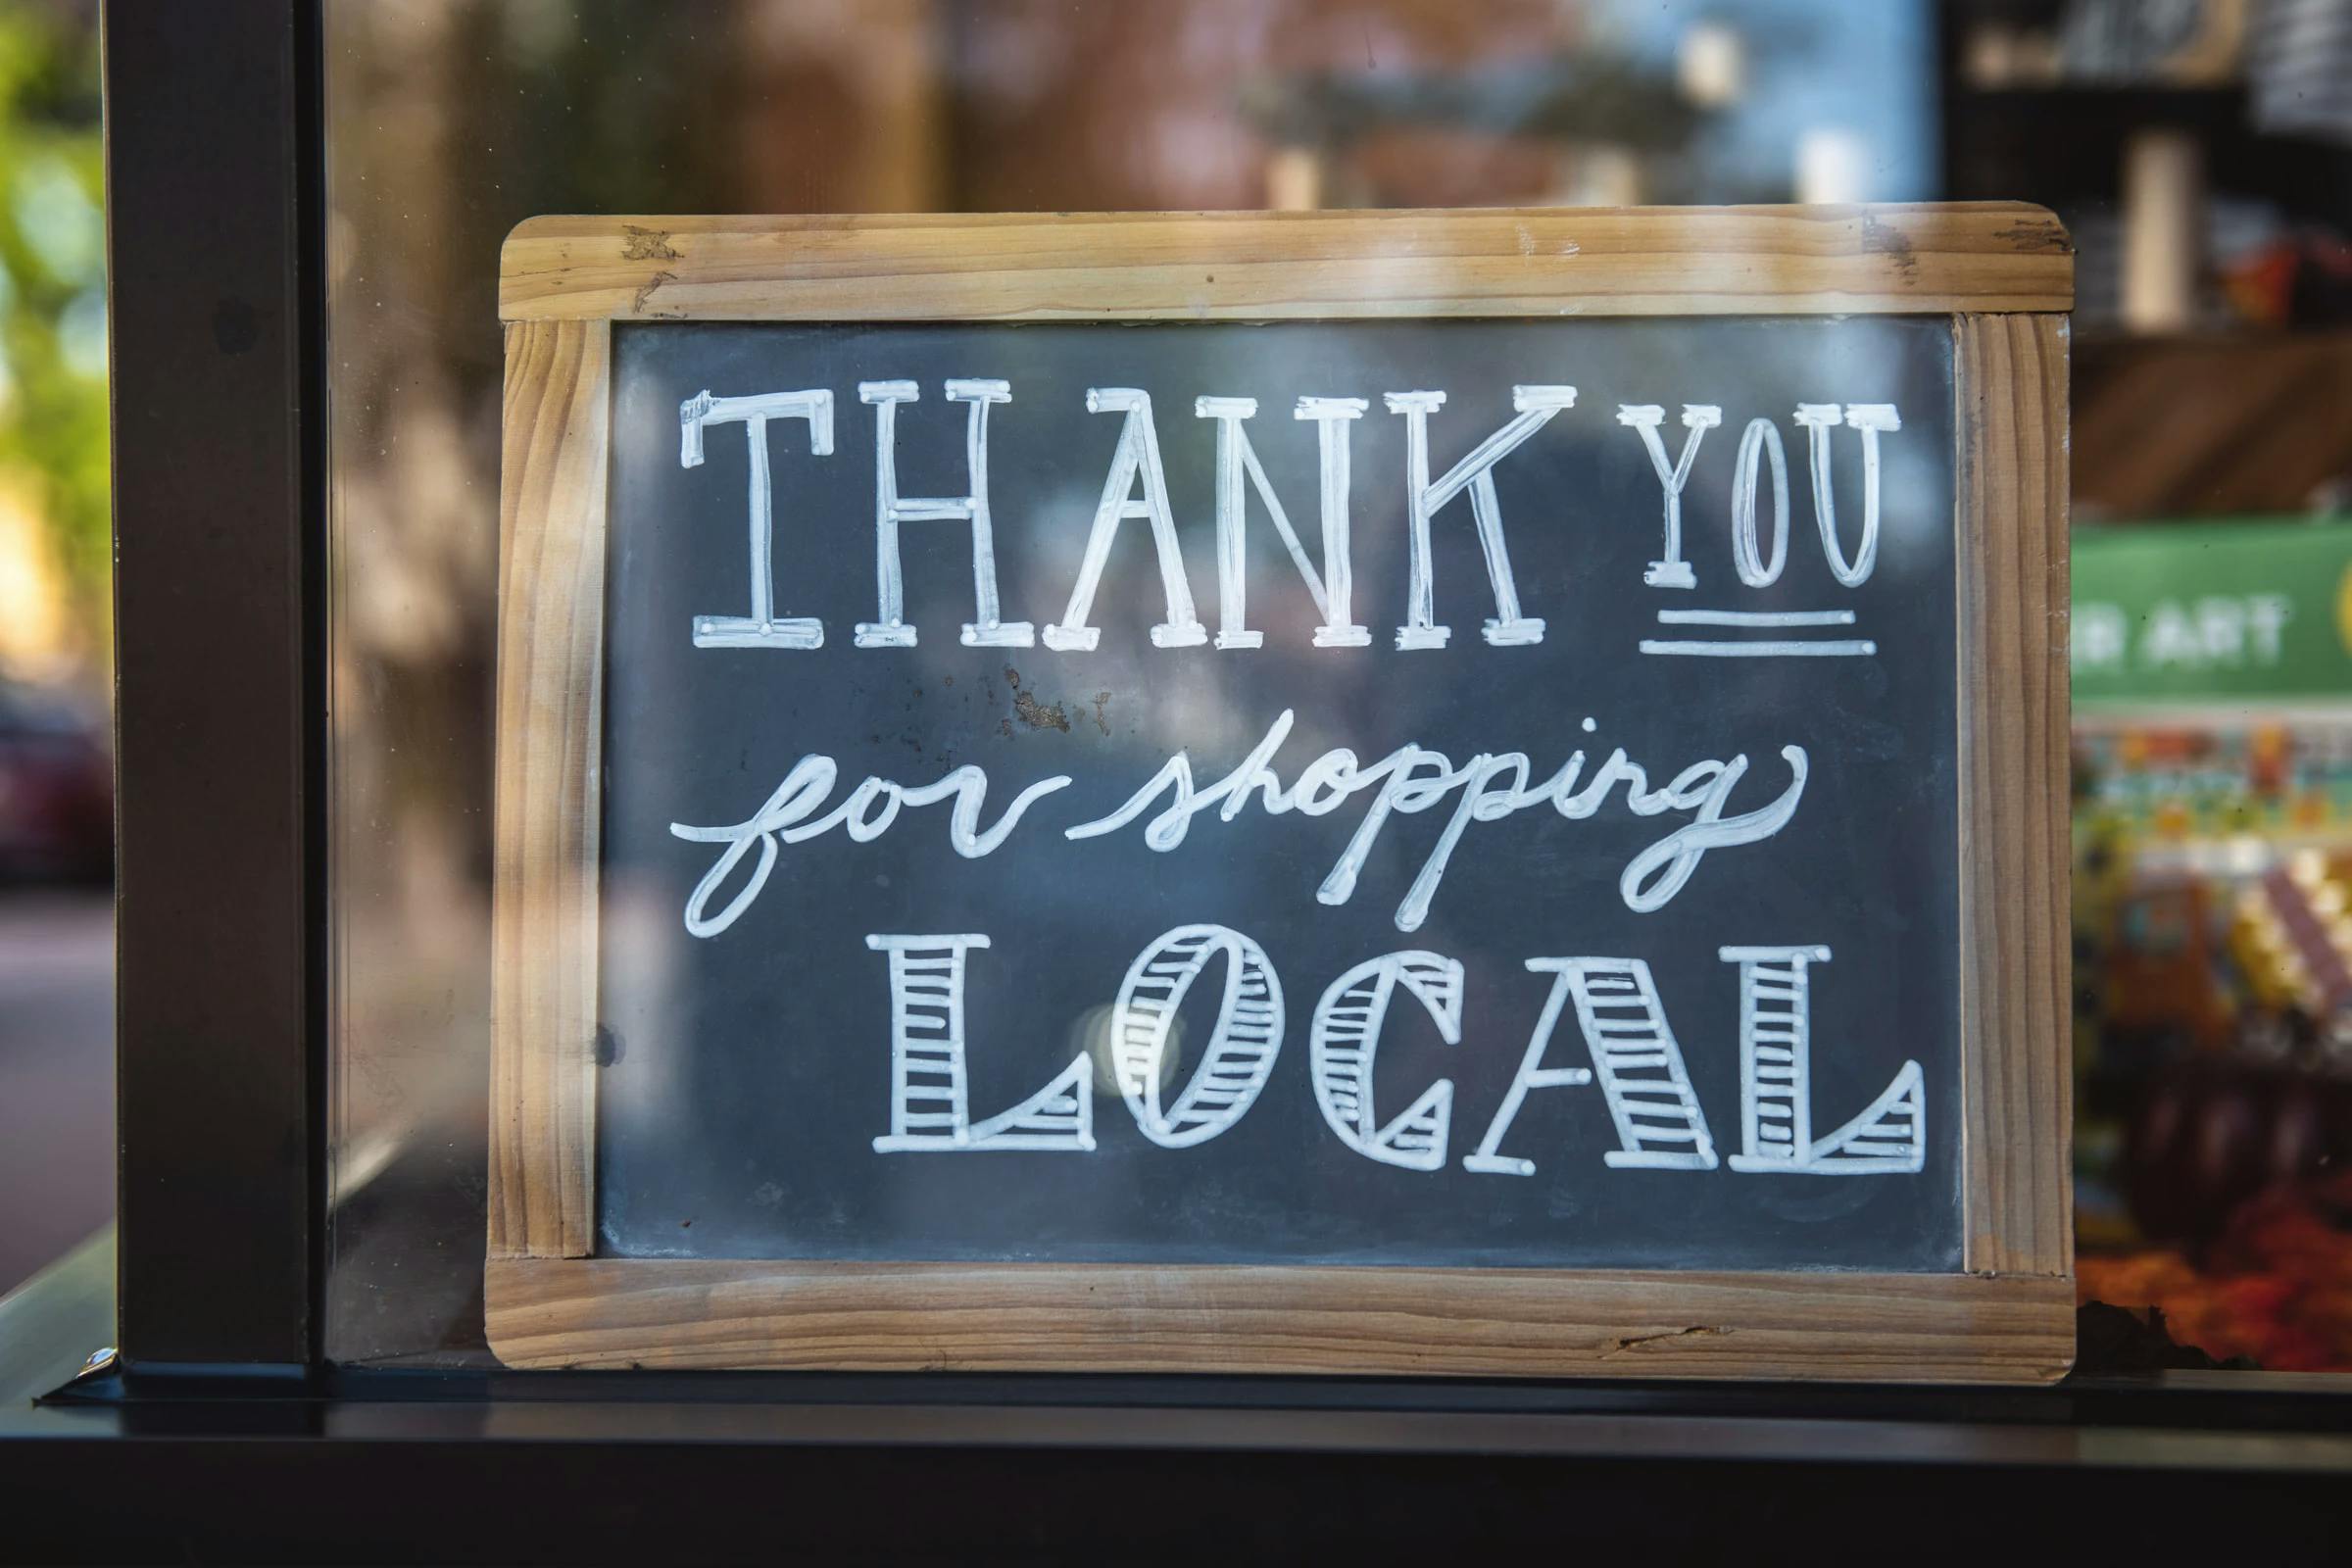 Un panneau dans la vitrine d'un magasin sur lequel on peut lire "Merci d'avoir fait vos achats localement".